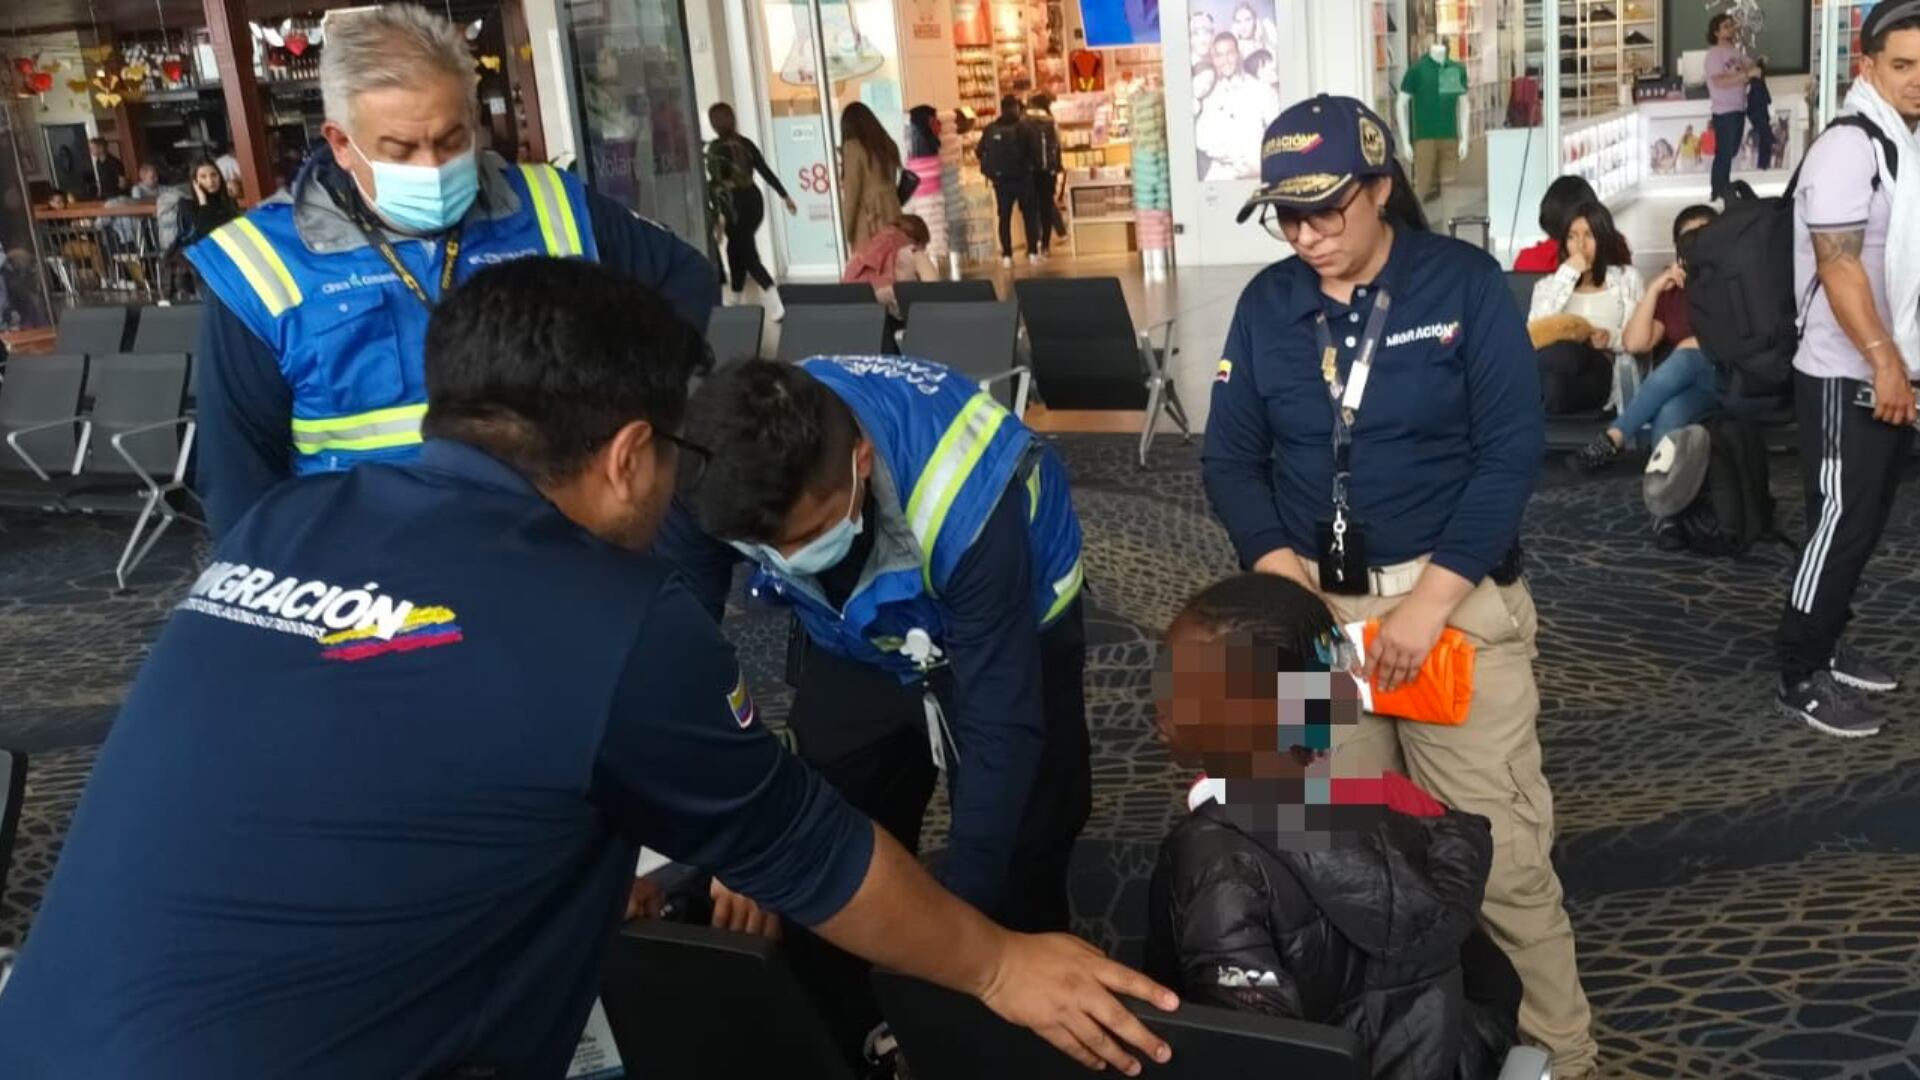 Migración Colombia informó que la joven fue remitida a la Unidad de Sanidad Aeroportuaria donde le realizaron un chequeo médico